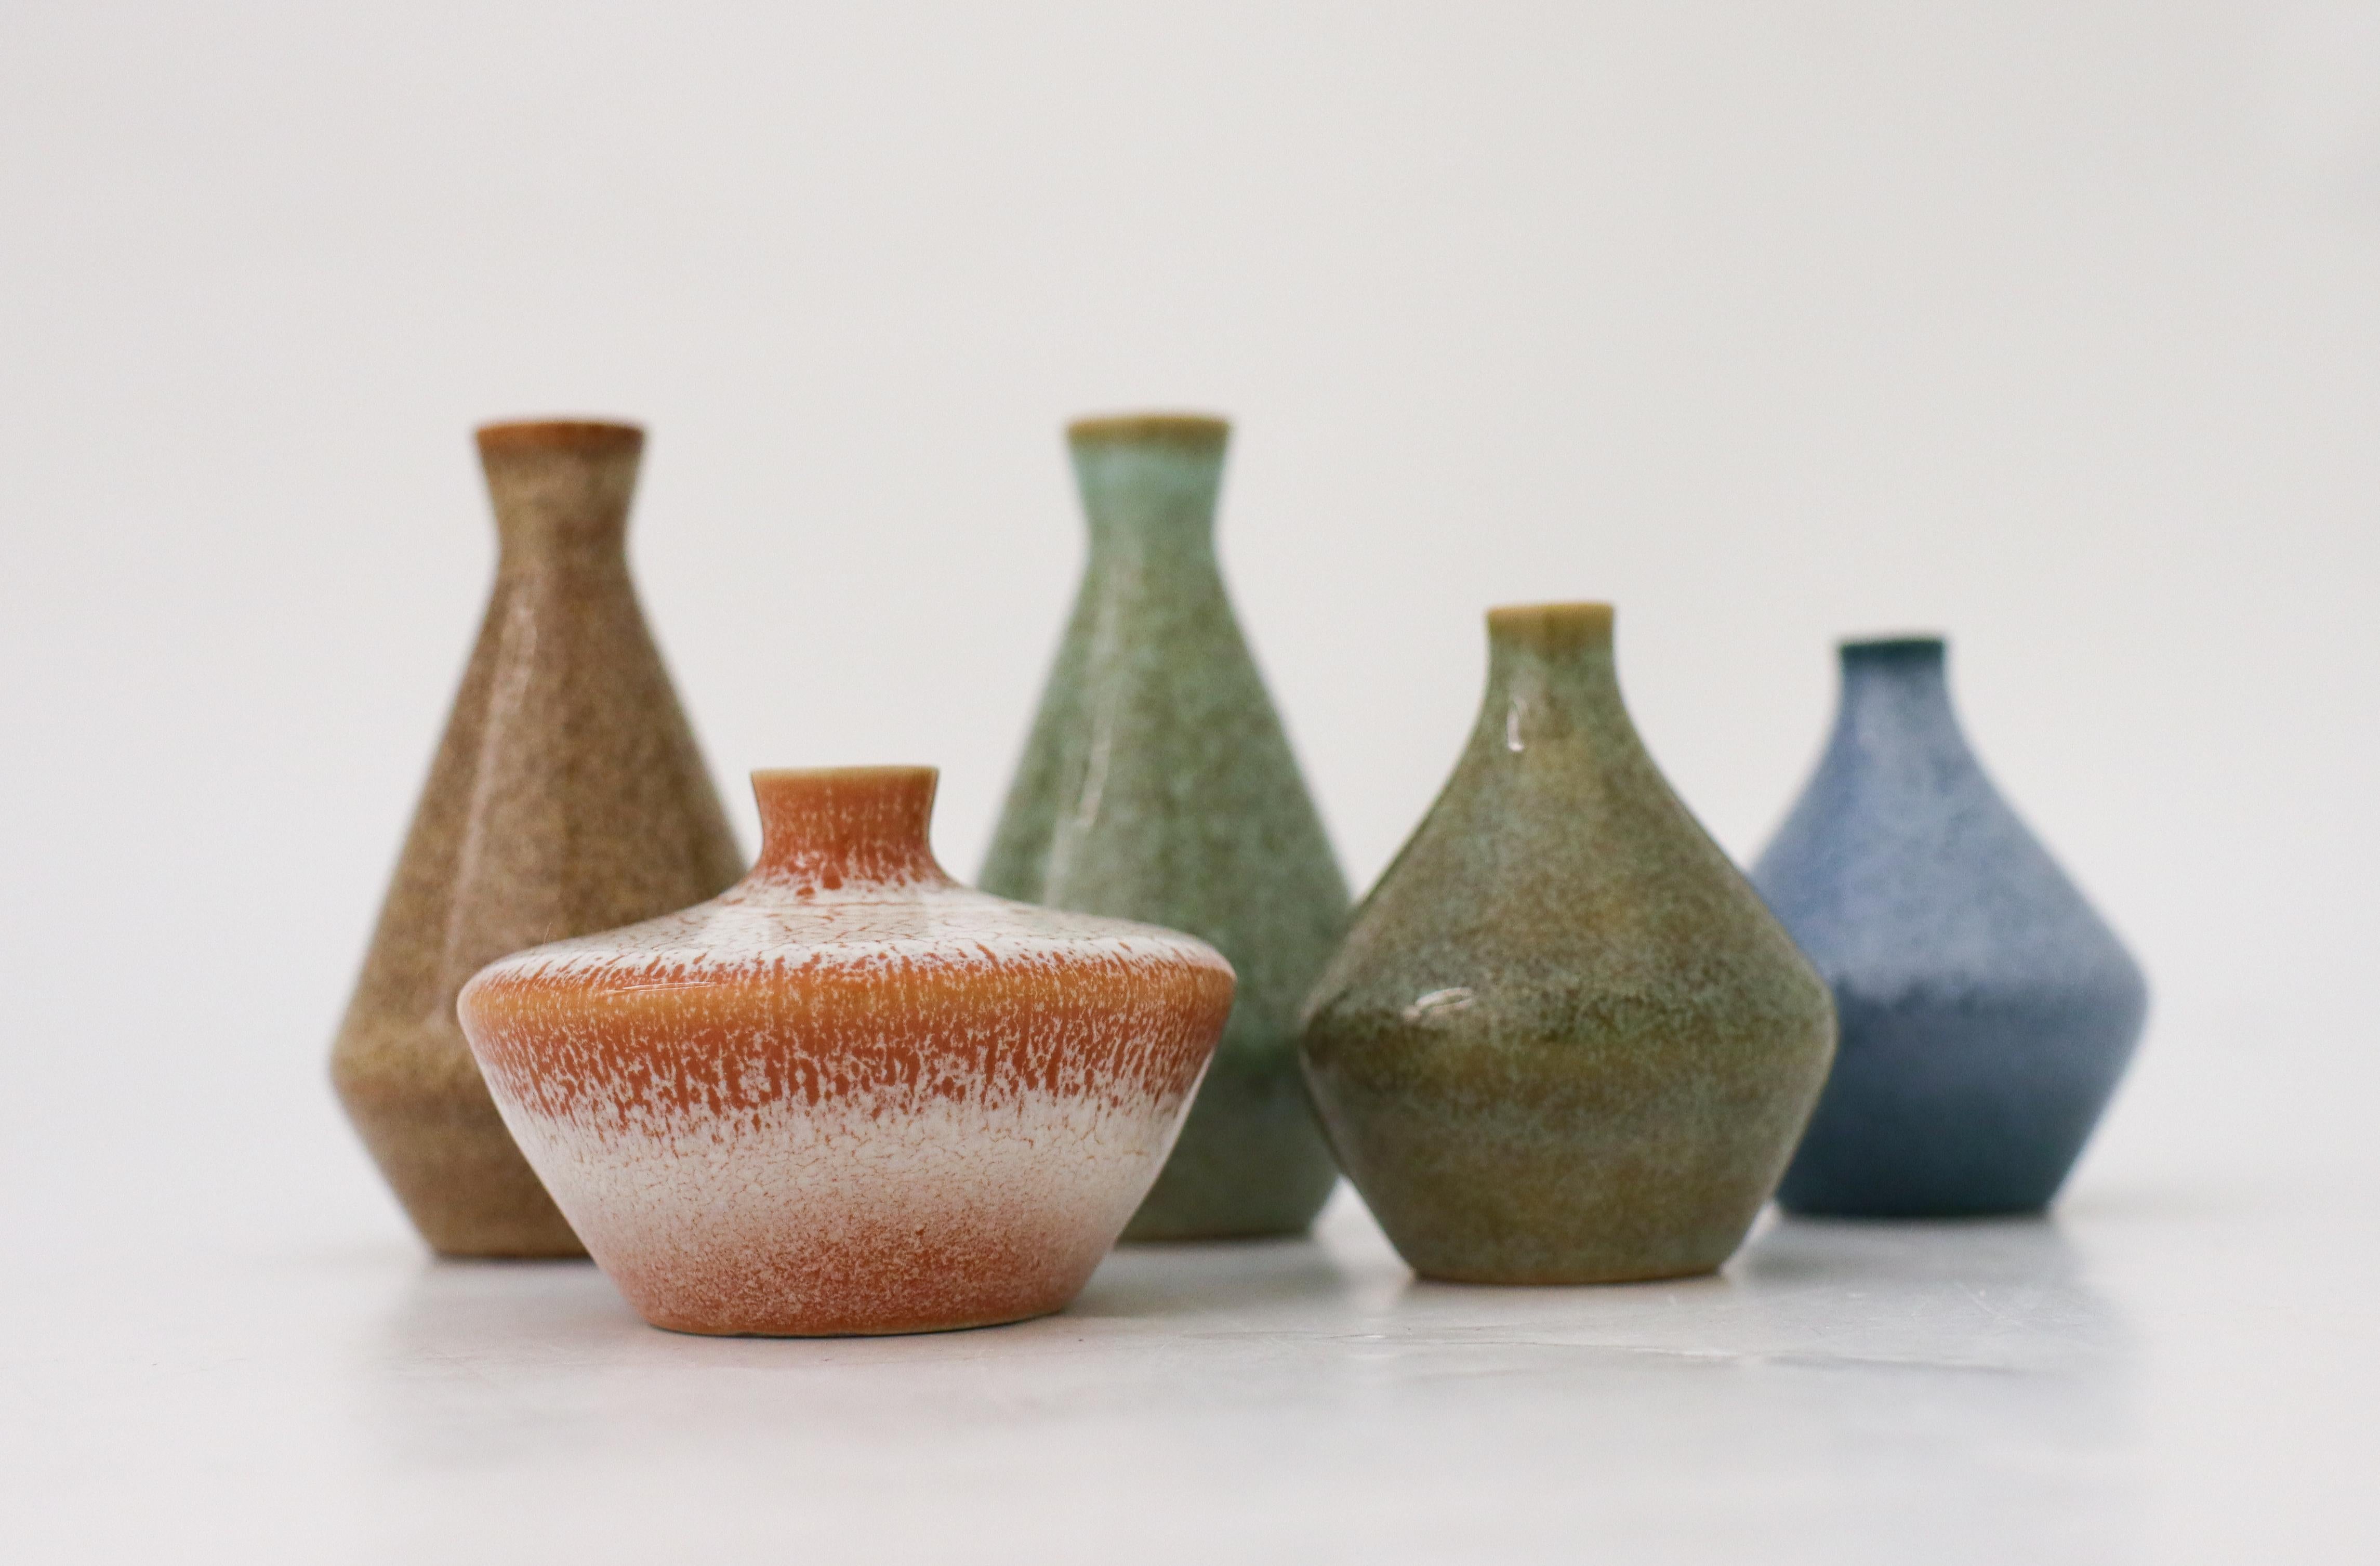 Eine Gruppe von fünf Vasen mit glänzender Glasur in verschiedenen Farben, entworfen von Bertil Lundgren bei Rörstrand. Sie sind zwischen 3,5 - 7 cm (1,4